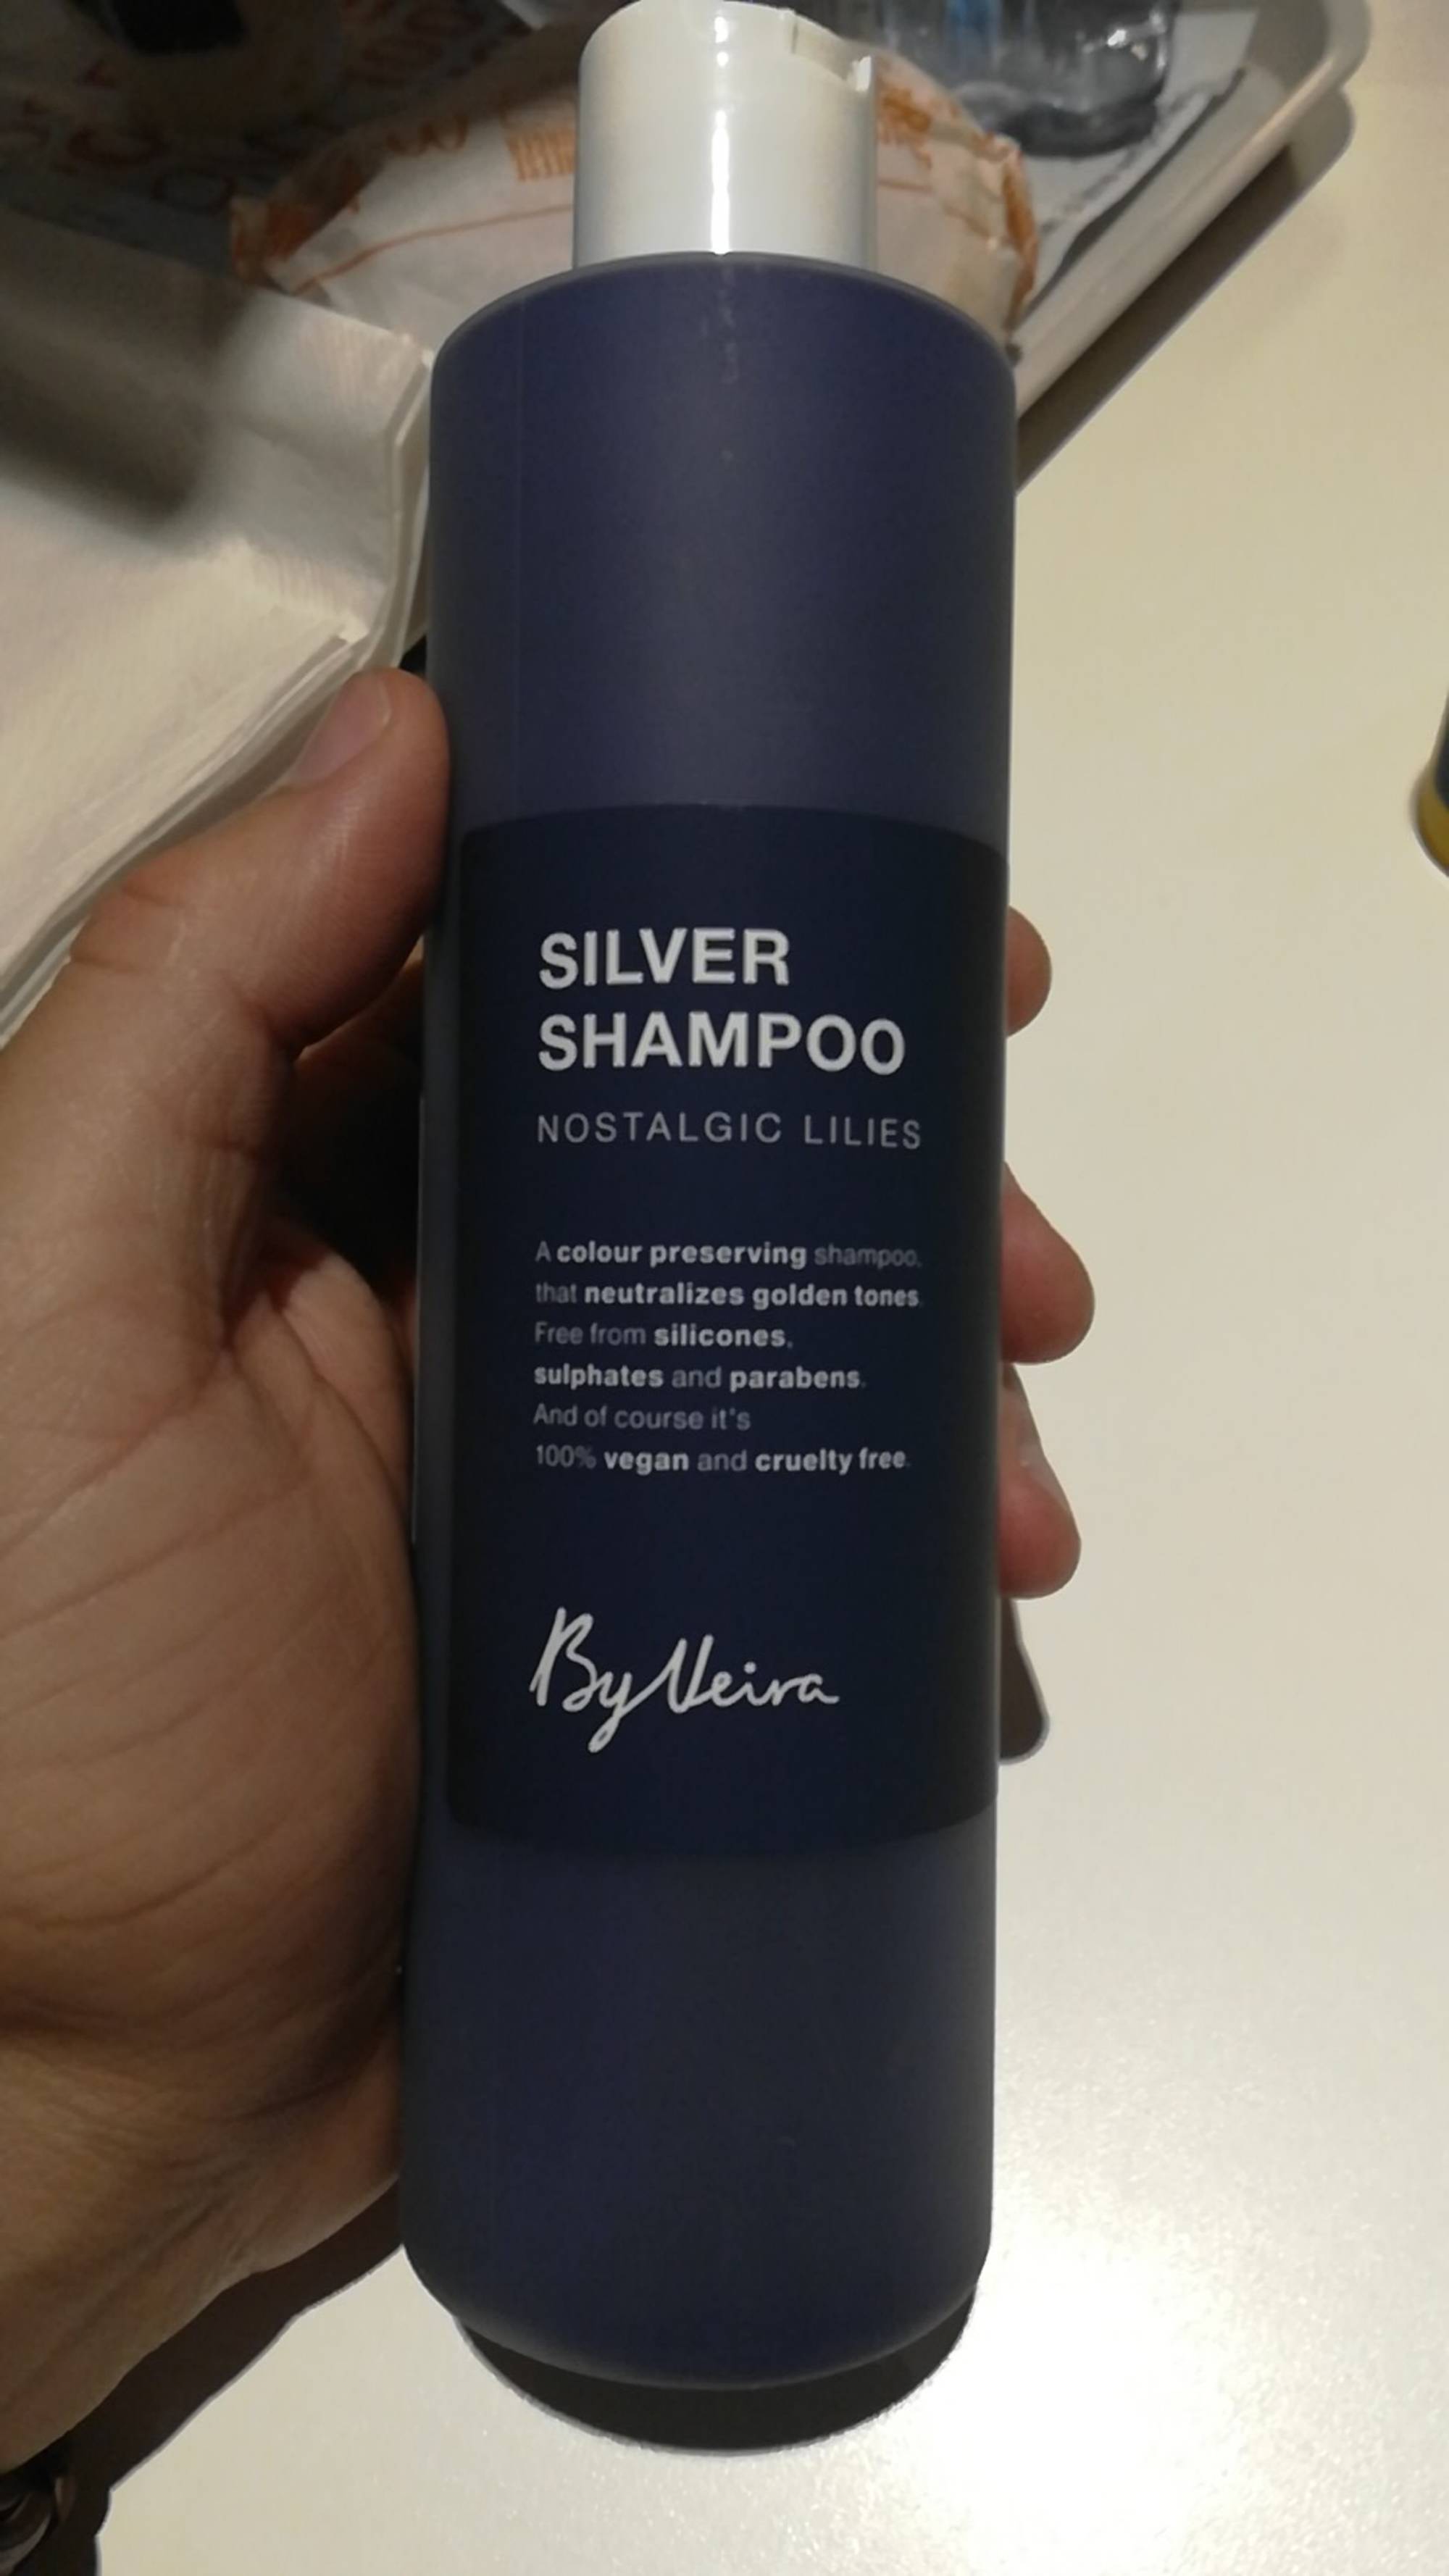 BYVEIRA - Silver shampoo